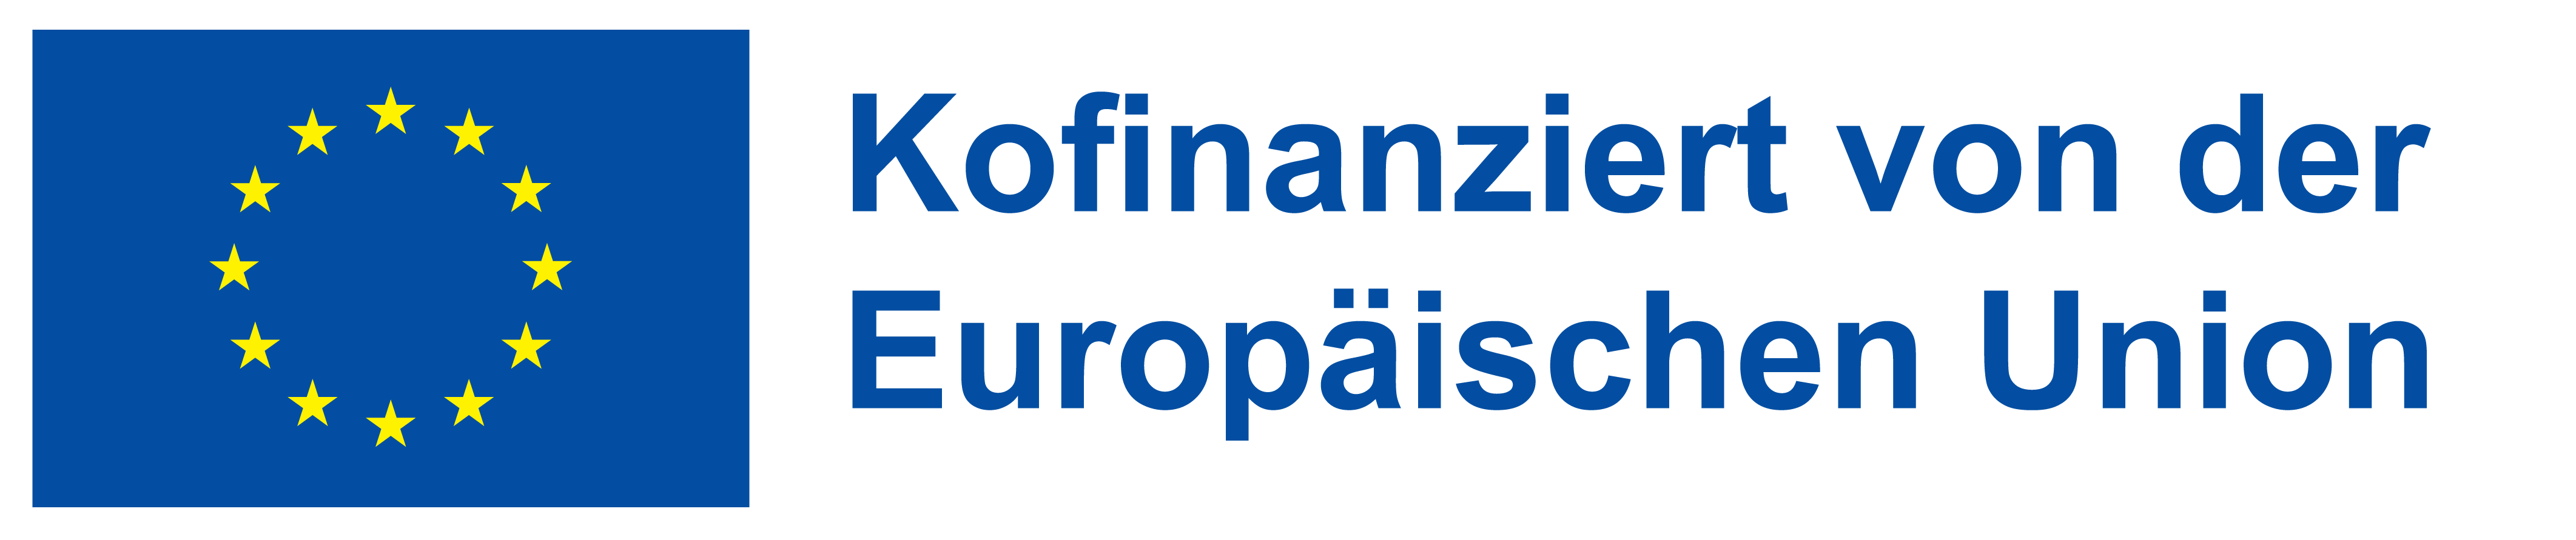 Logo: Europäischer Sozialfond - Kofinanziert von der Europäischen Union_POS